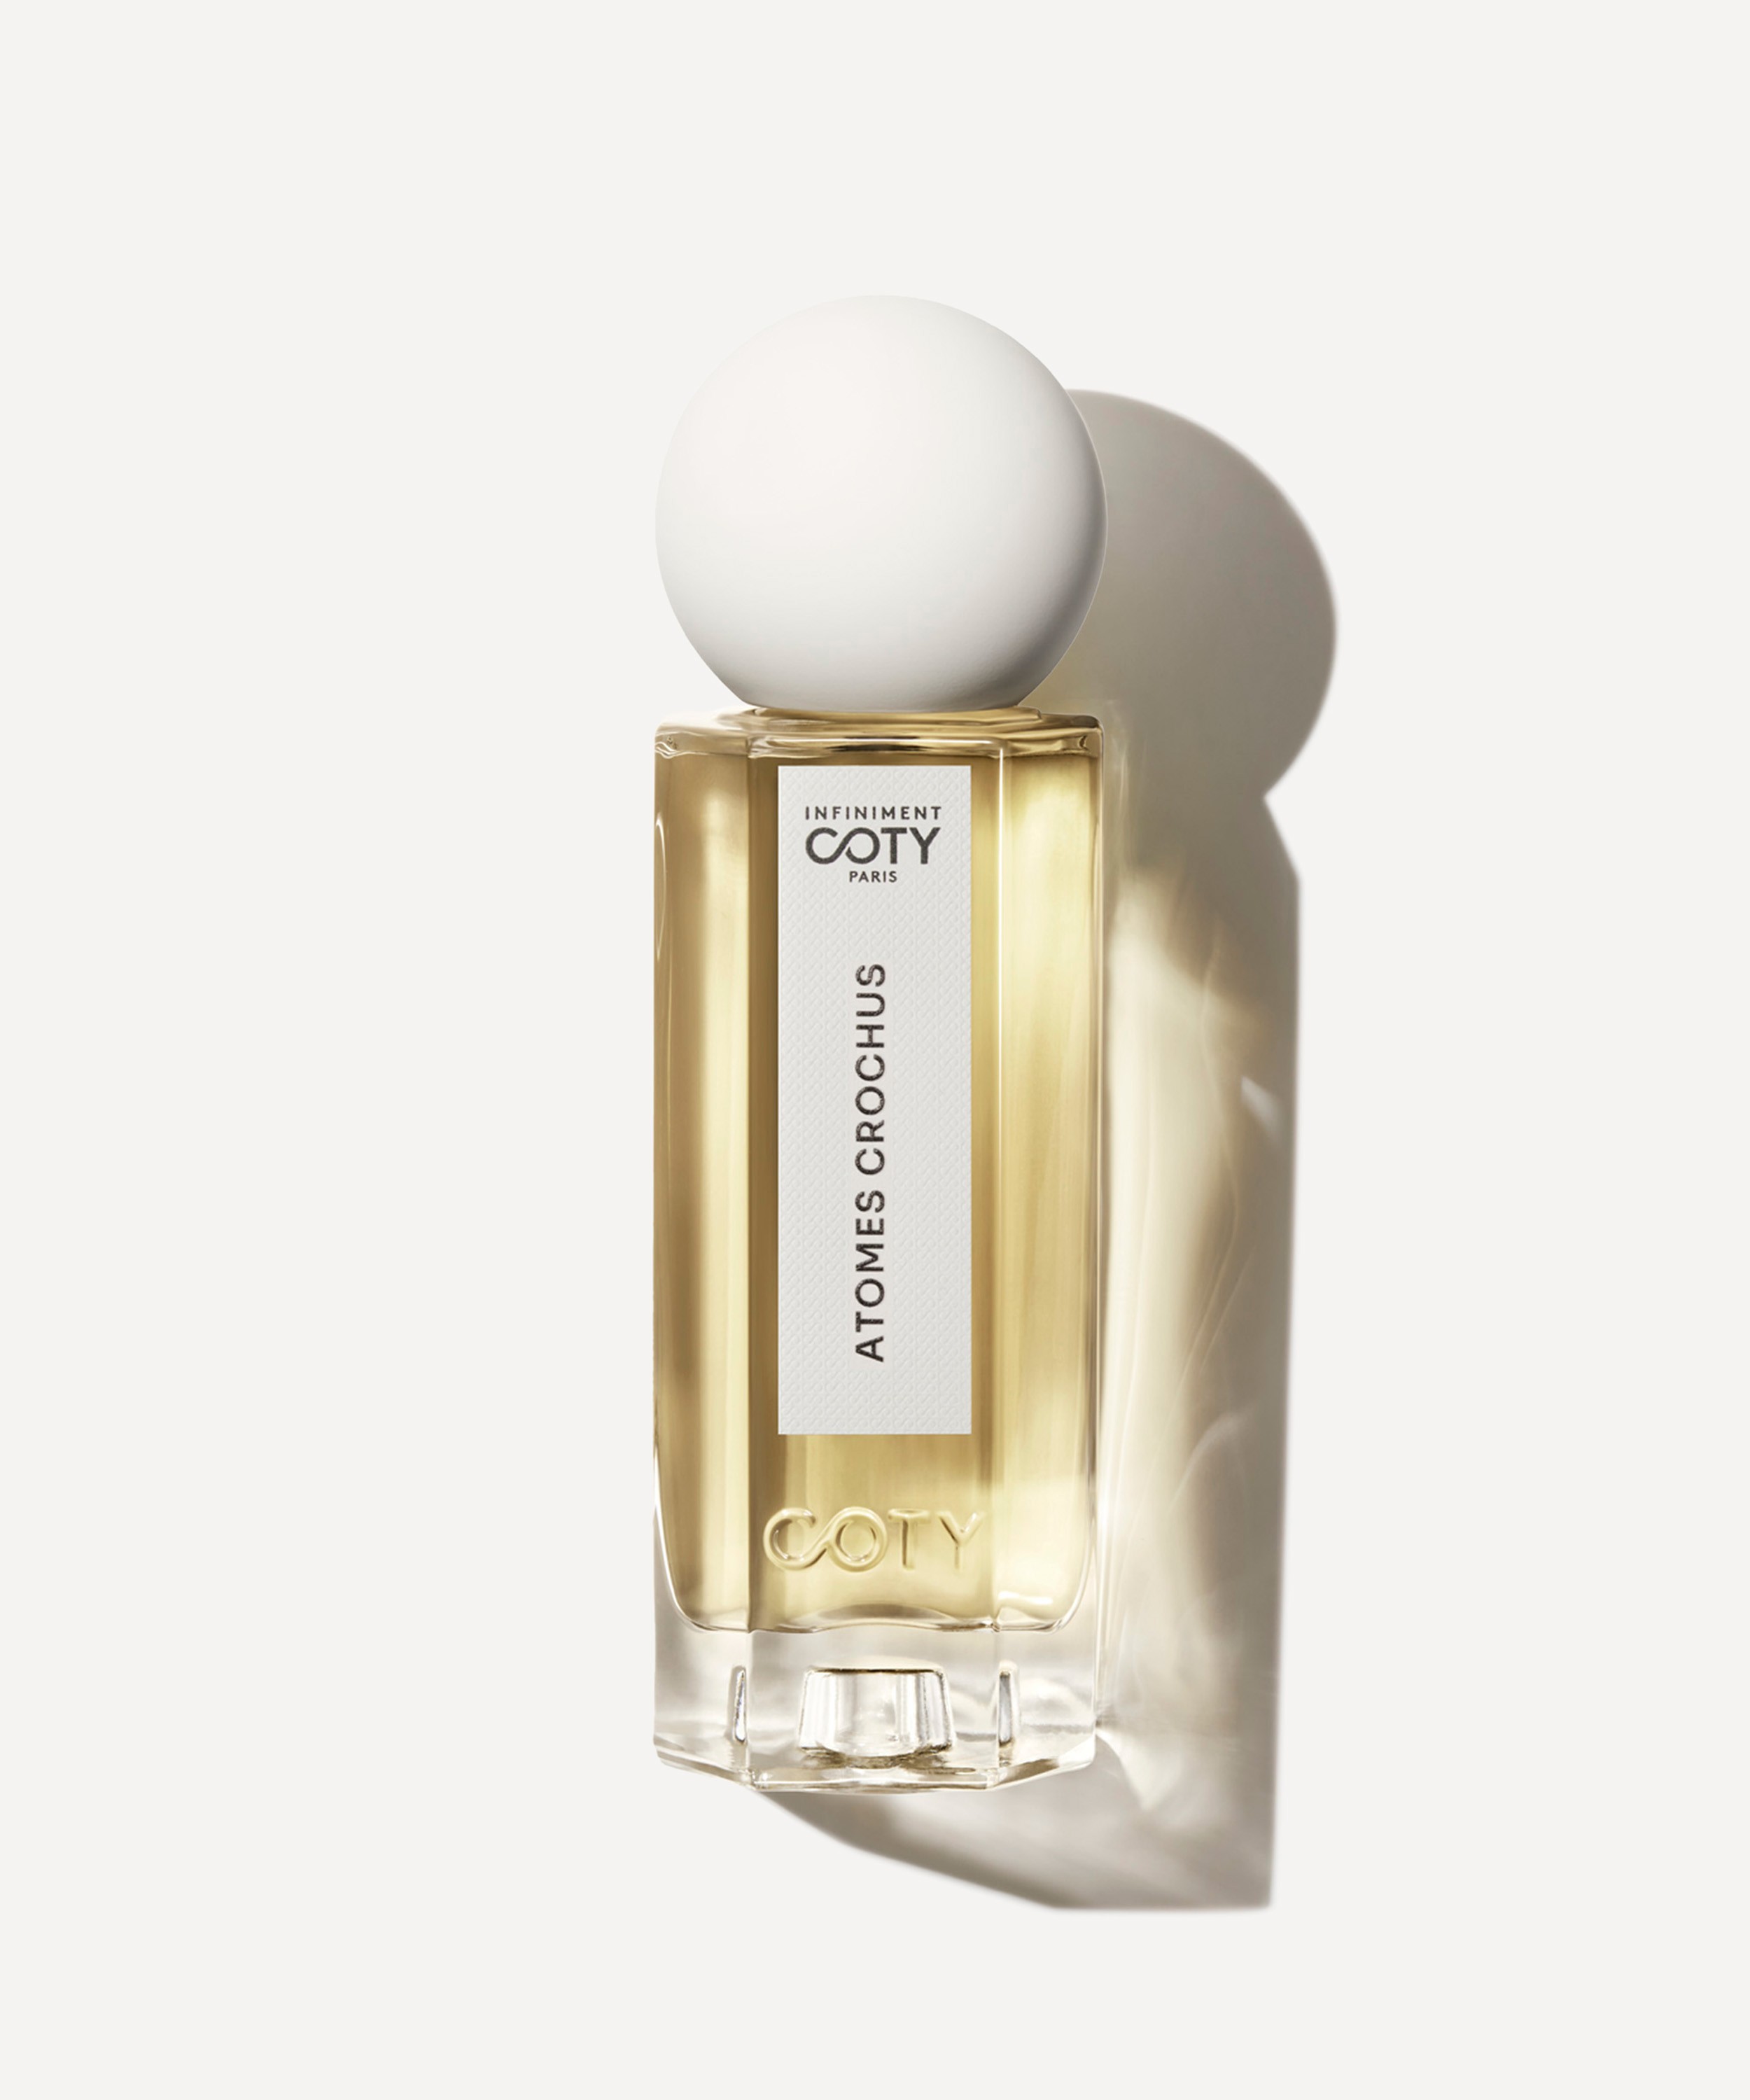 INFINIMENT COTY PARIS - Atomes Crochus Parfum 75ml image number 0